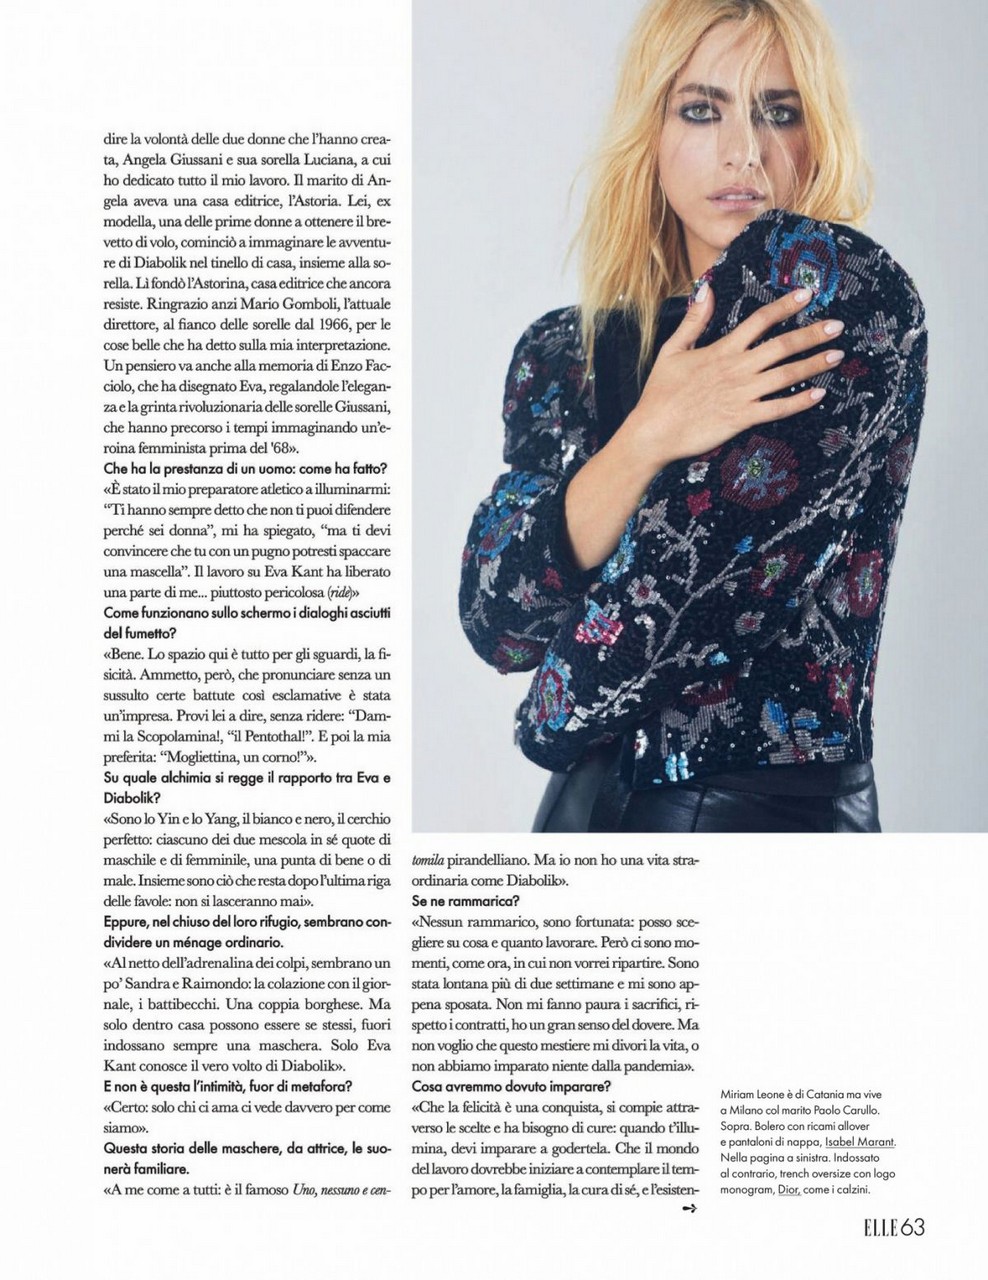 Miriam Leone Elle Magazine Italy December